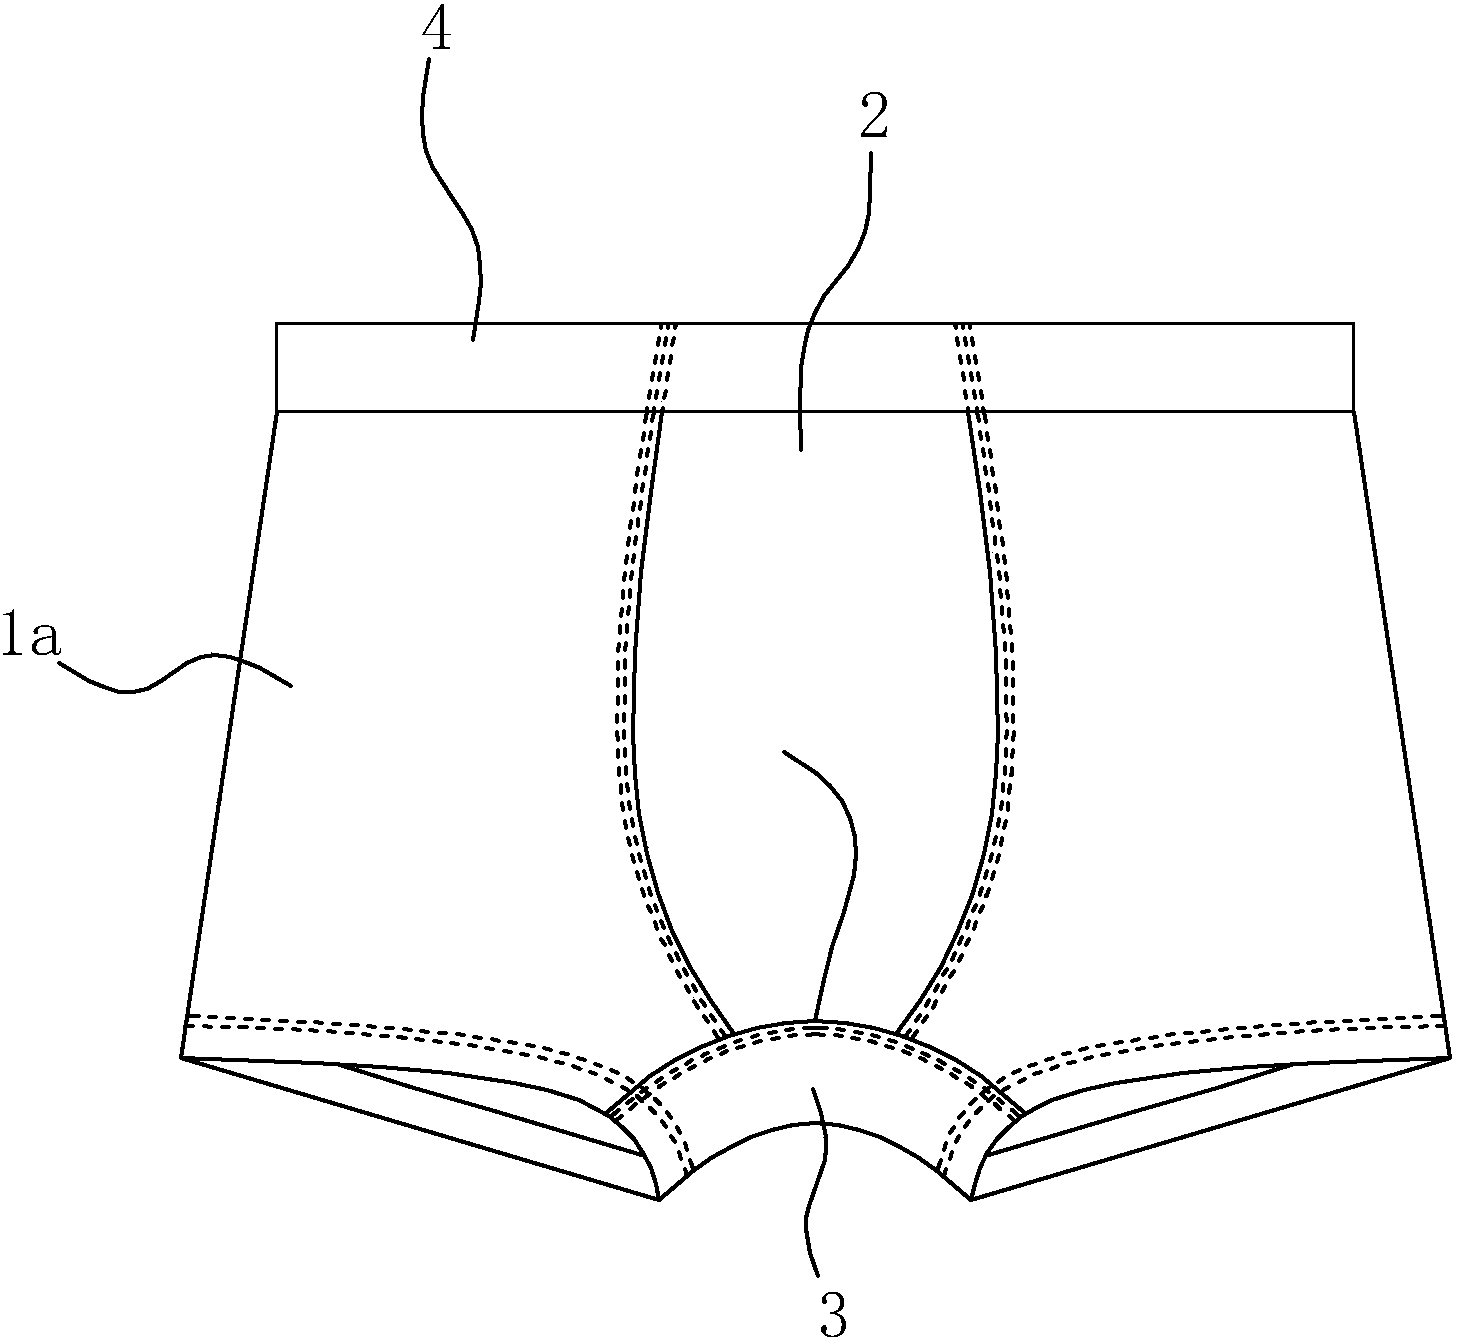 男士内裤制版图画法图片